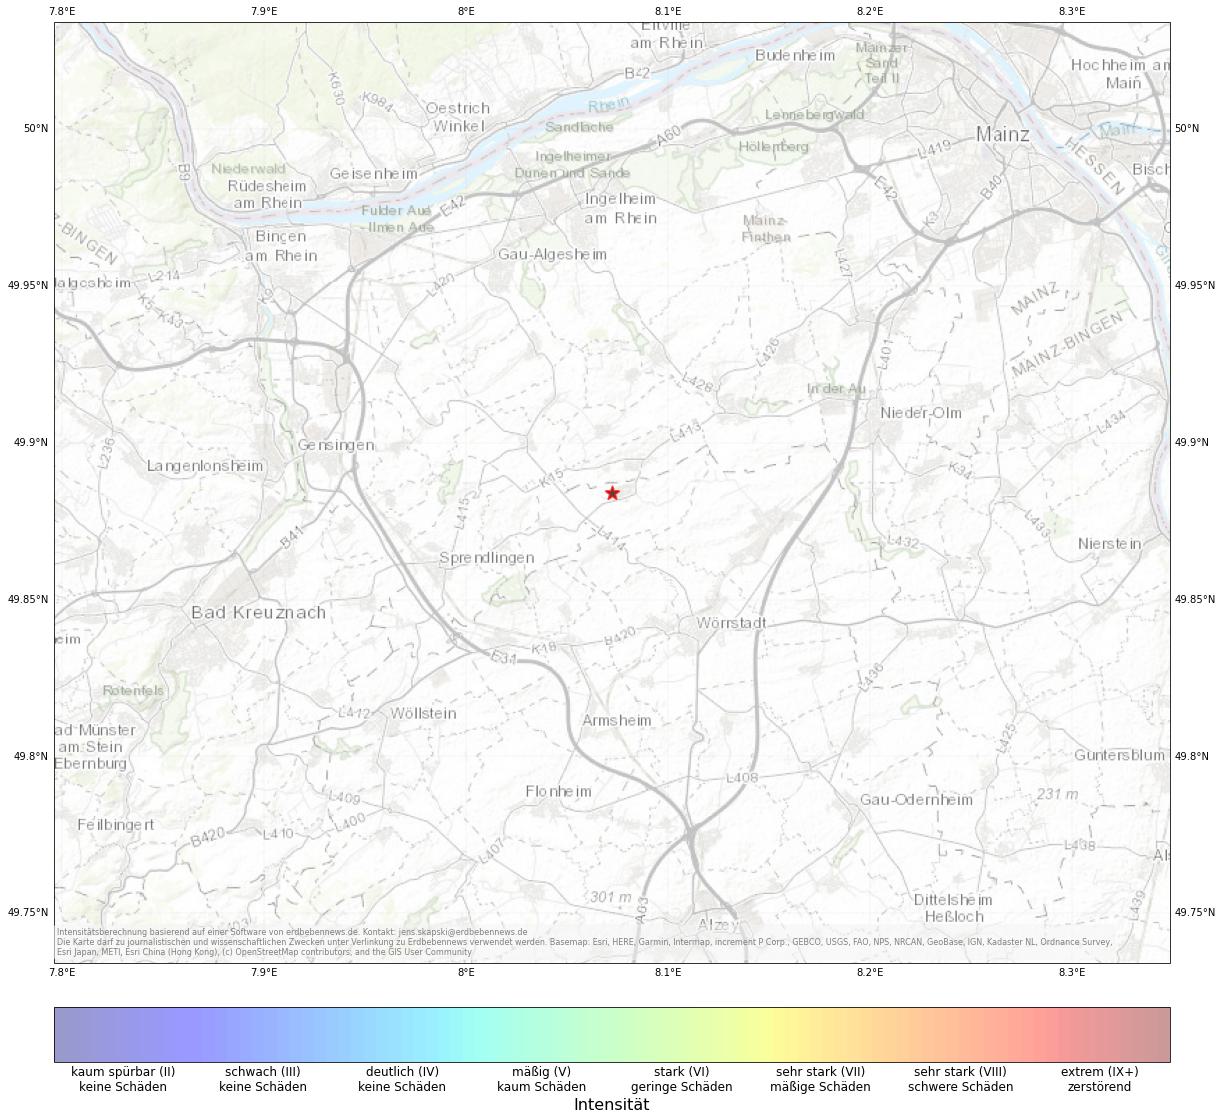 Berechnete Intensität (ShakeMap) des Erdbebens der Stärke 1.4 am 23. May, 06:52 in Deutschland